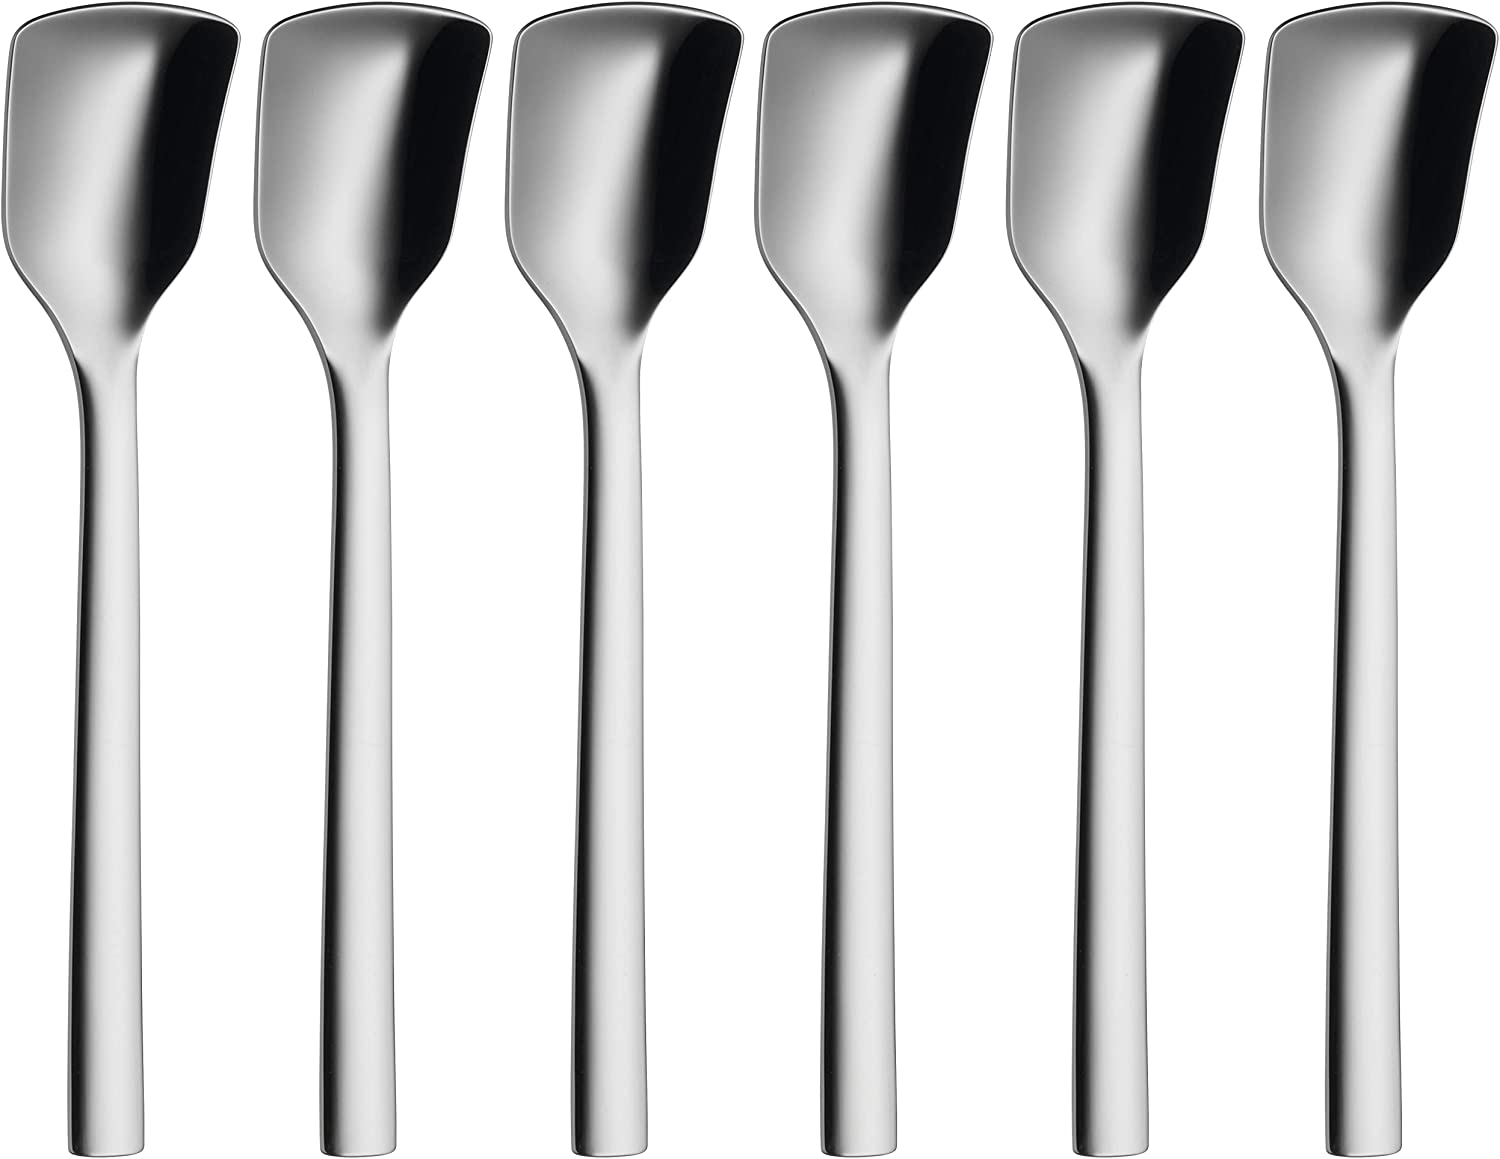 WMF Set of 6 Nuova ice-cream spoons